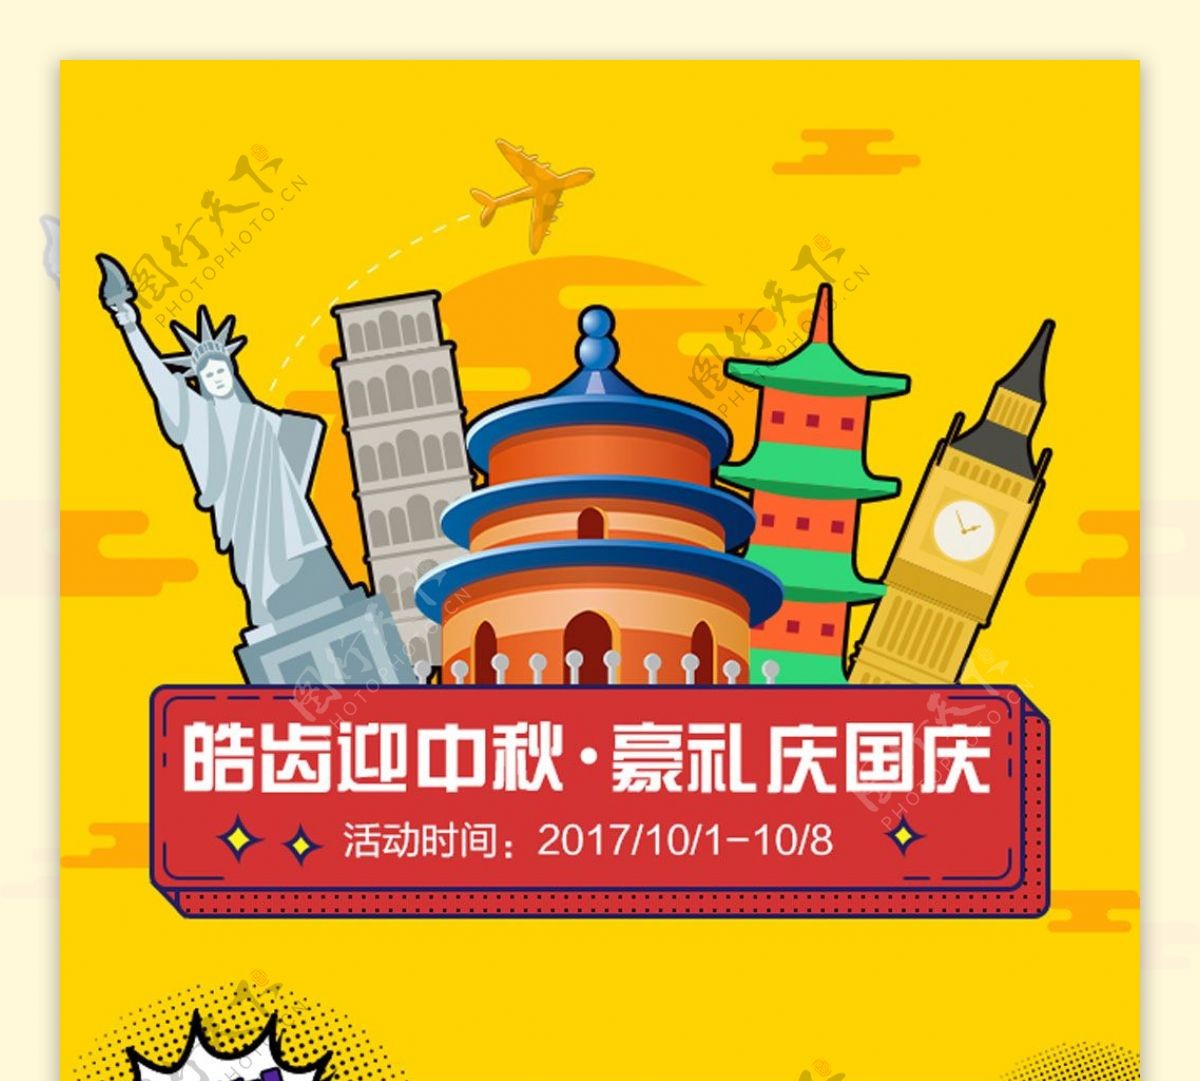 中秋国庆双节庆典活动展板设计